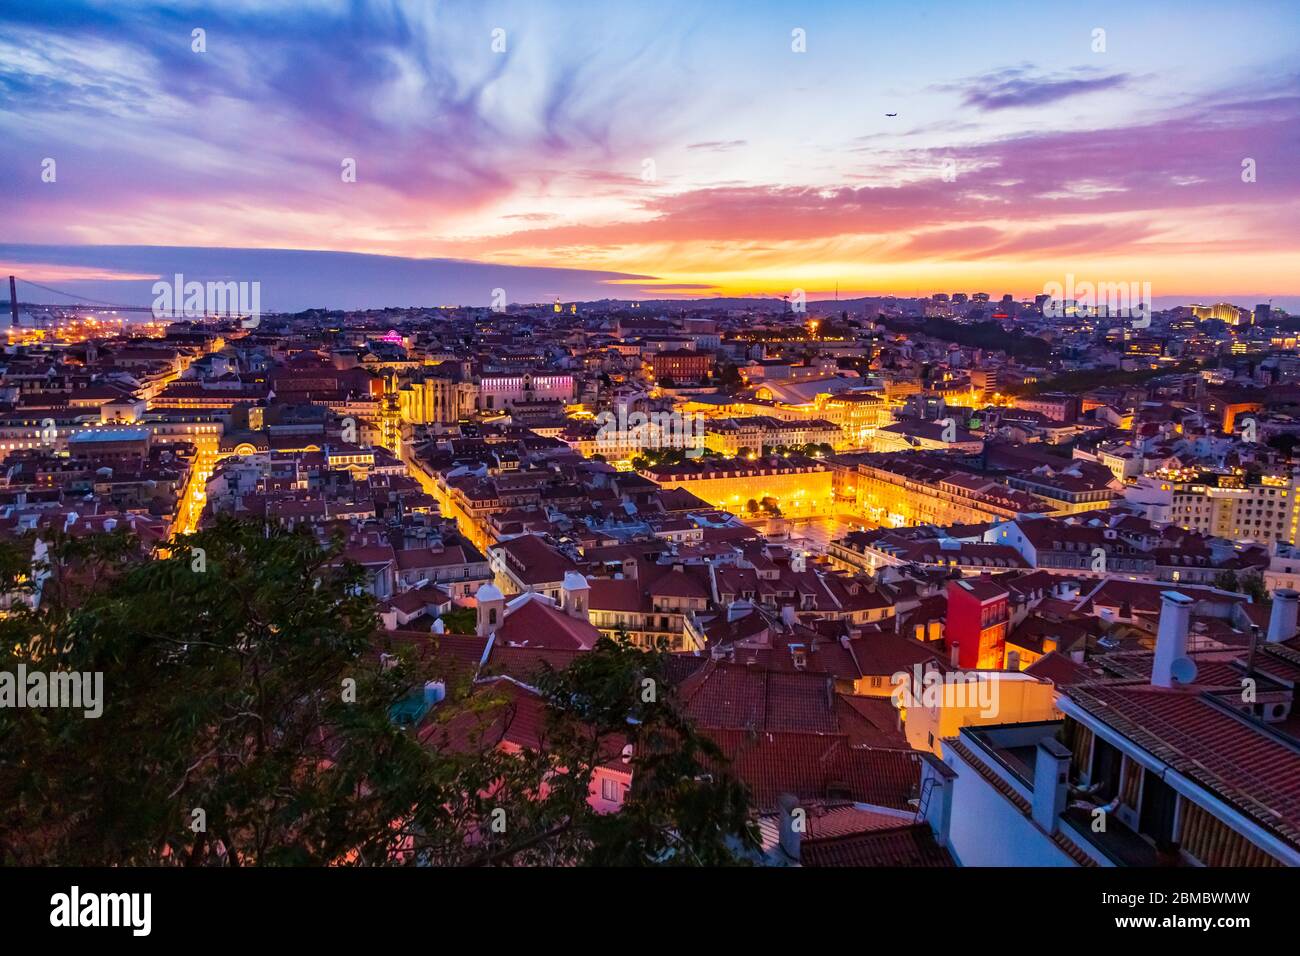 Schönes Panorama der Altstadt und des Baixa-Viertels in Lissabon am Abend, vom Sao Jorge Burgberg, Portugal, aus gesehen Stockfoto